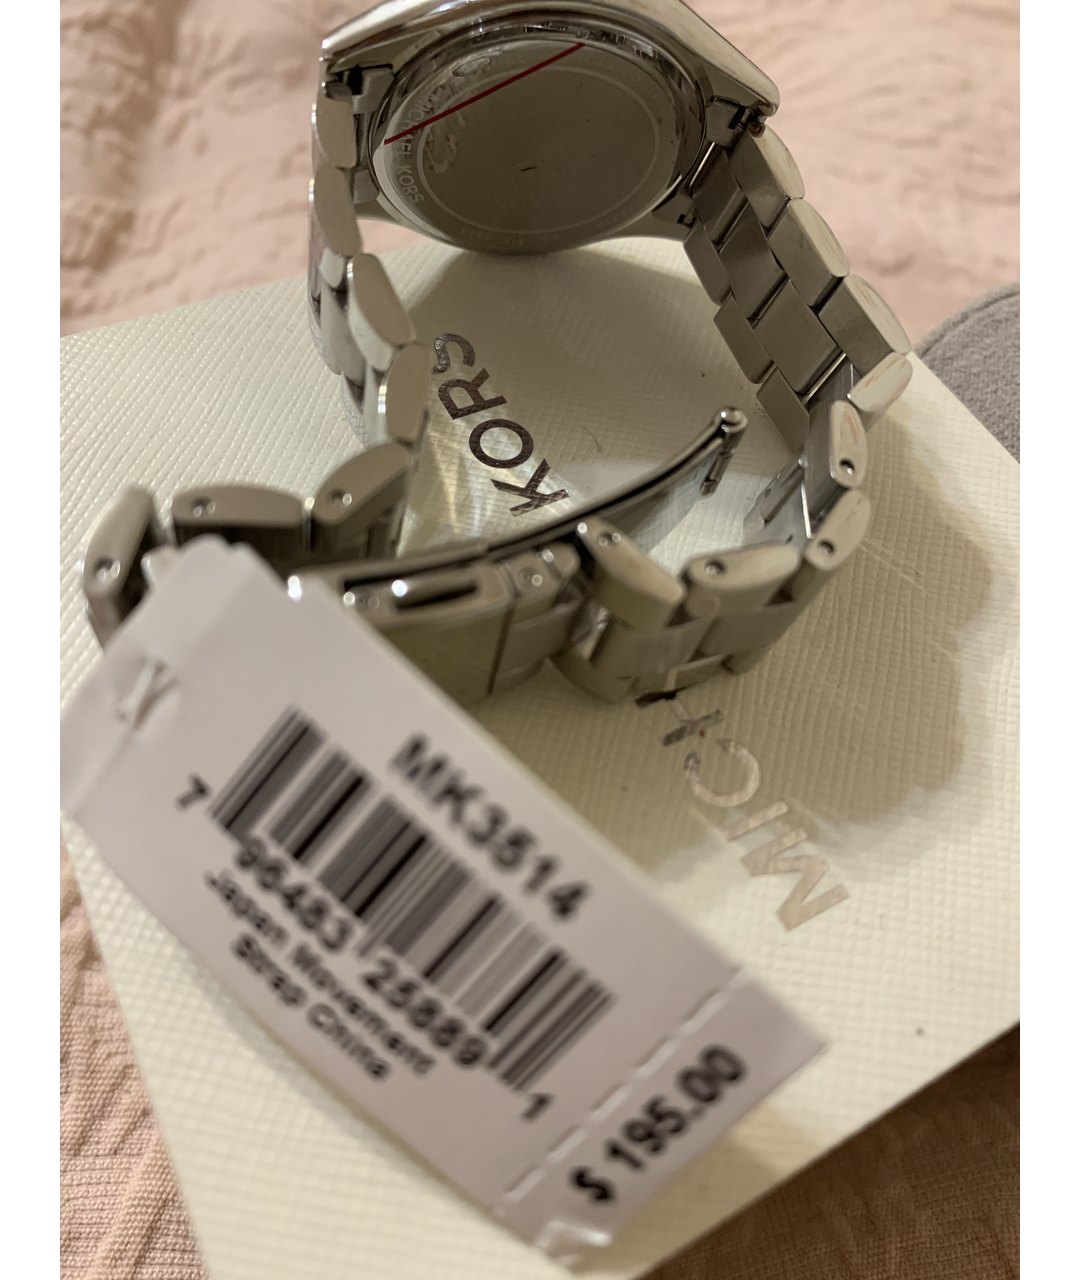 MICHAEL KORS Серебряные стальные часы, фото 2